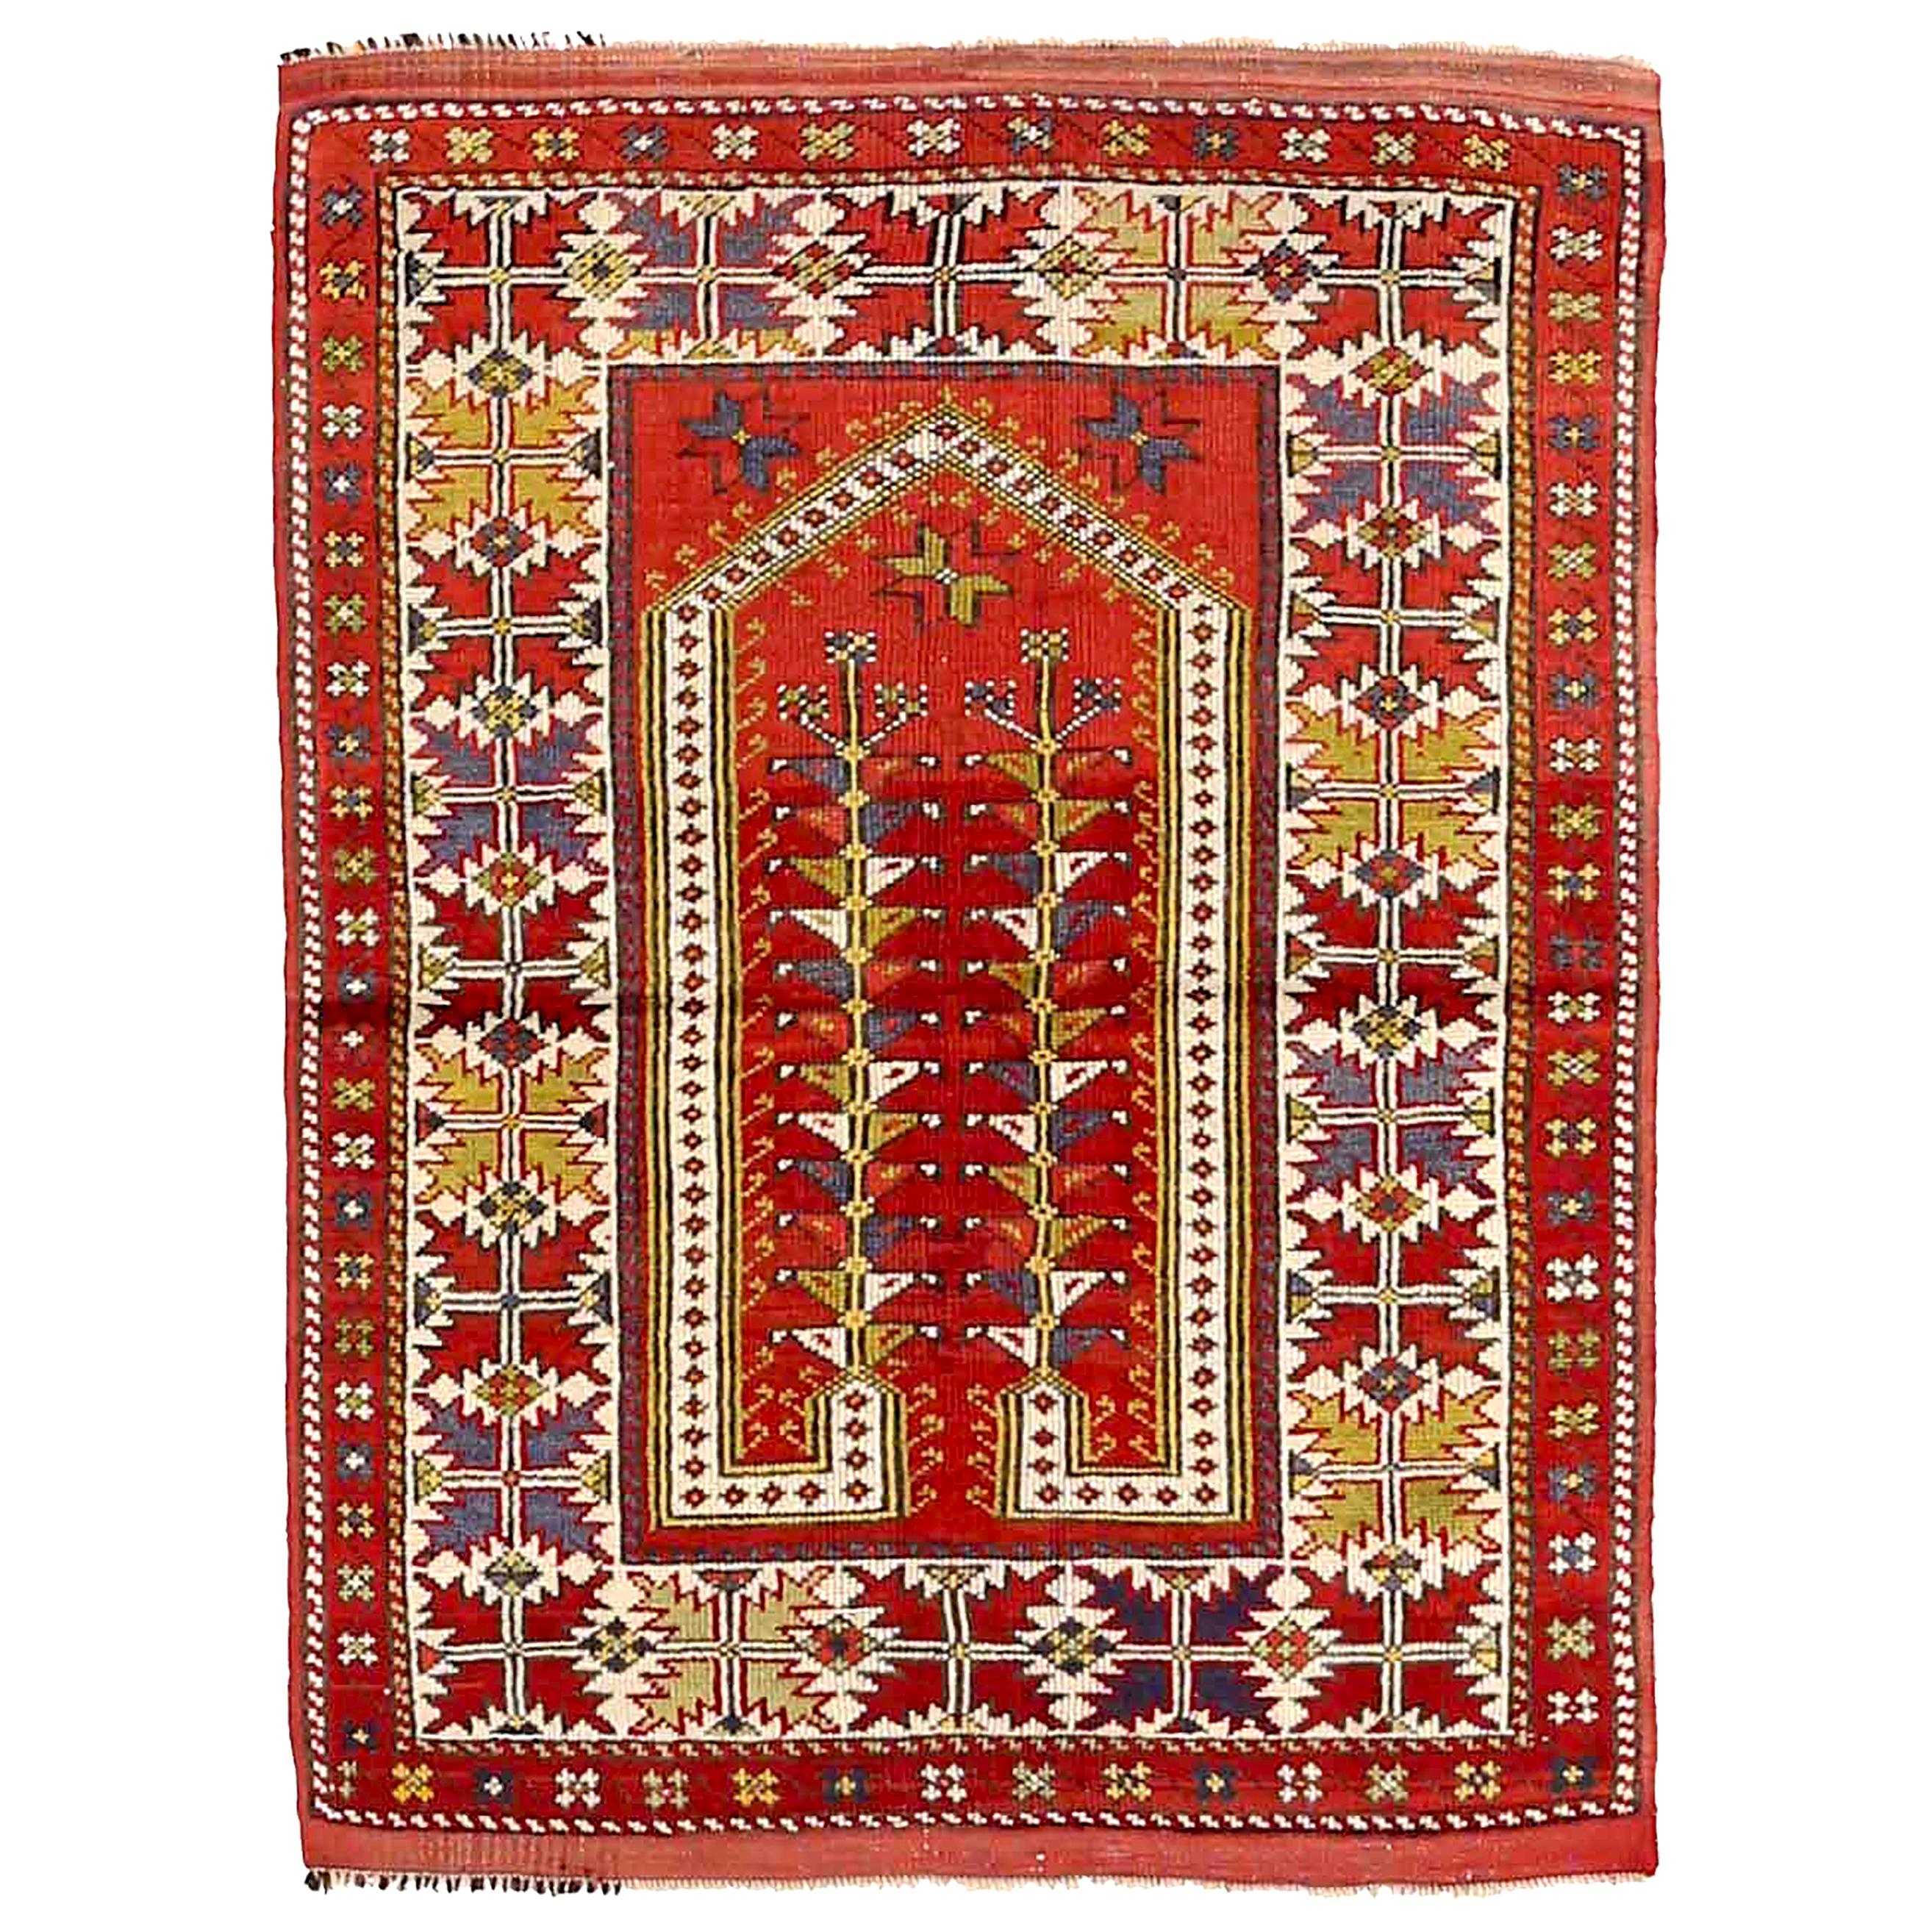 Antiker türkischer Teppich im Oushak-Design